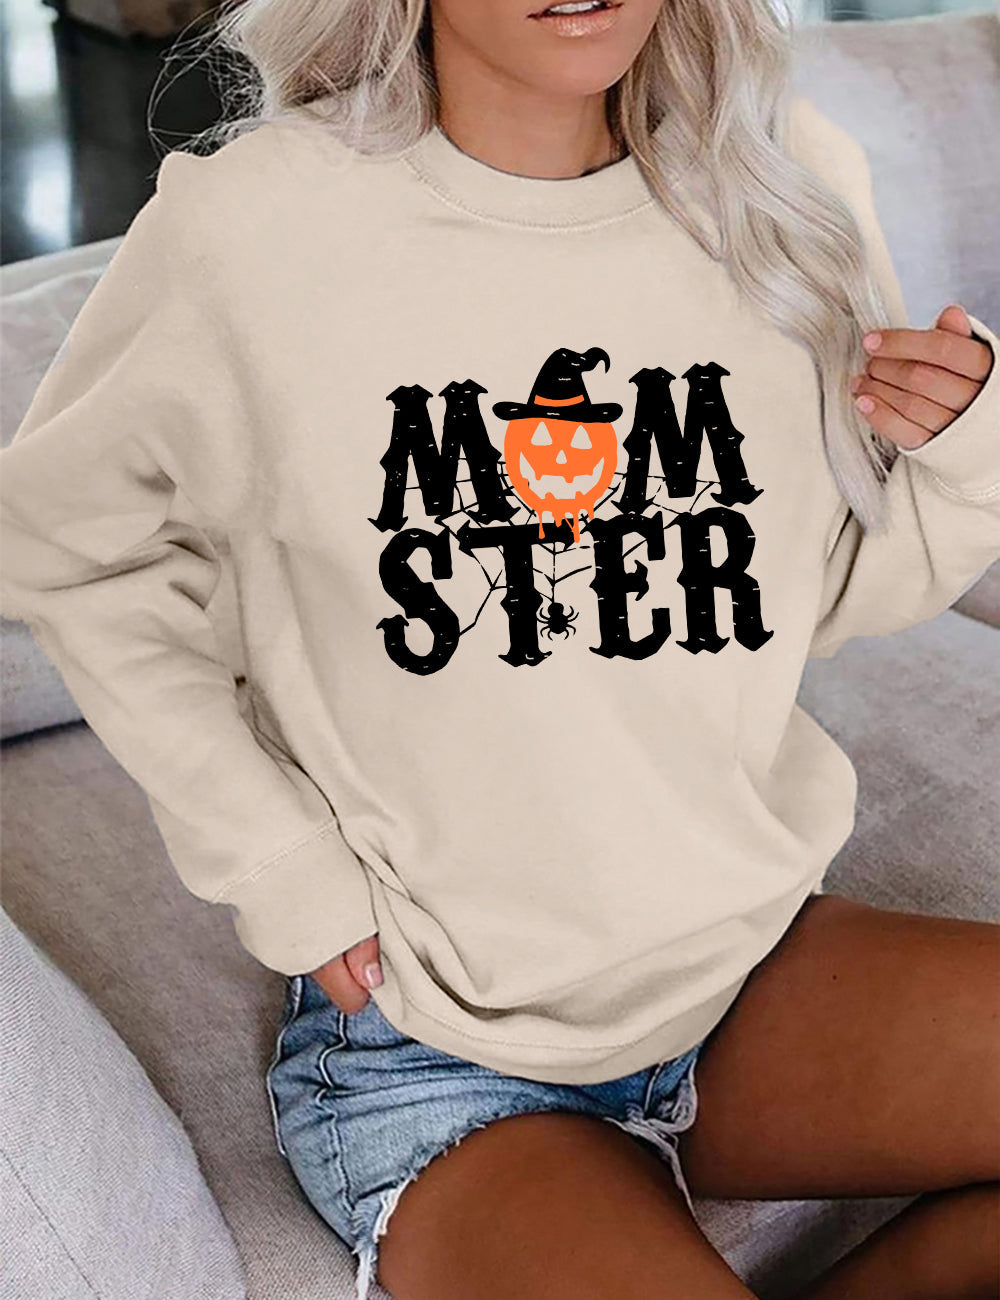 Momster Kürbis Halloween Sweatshirt